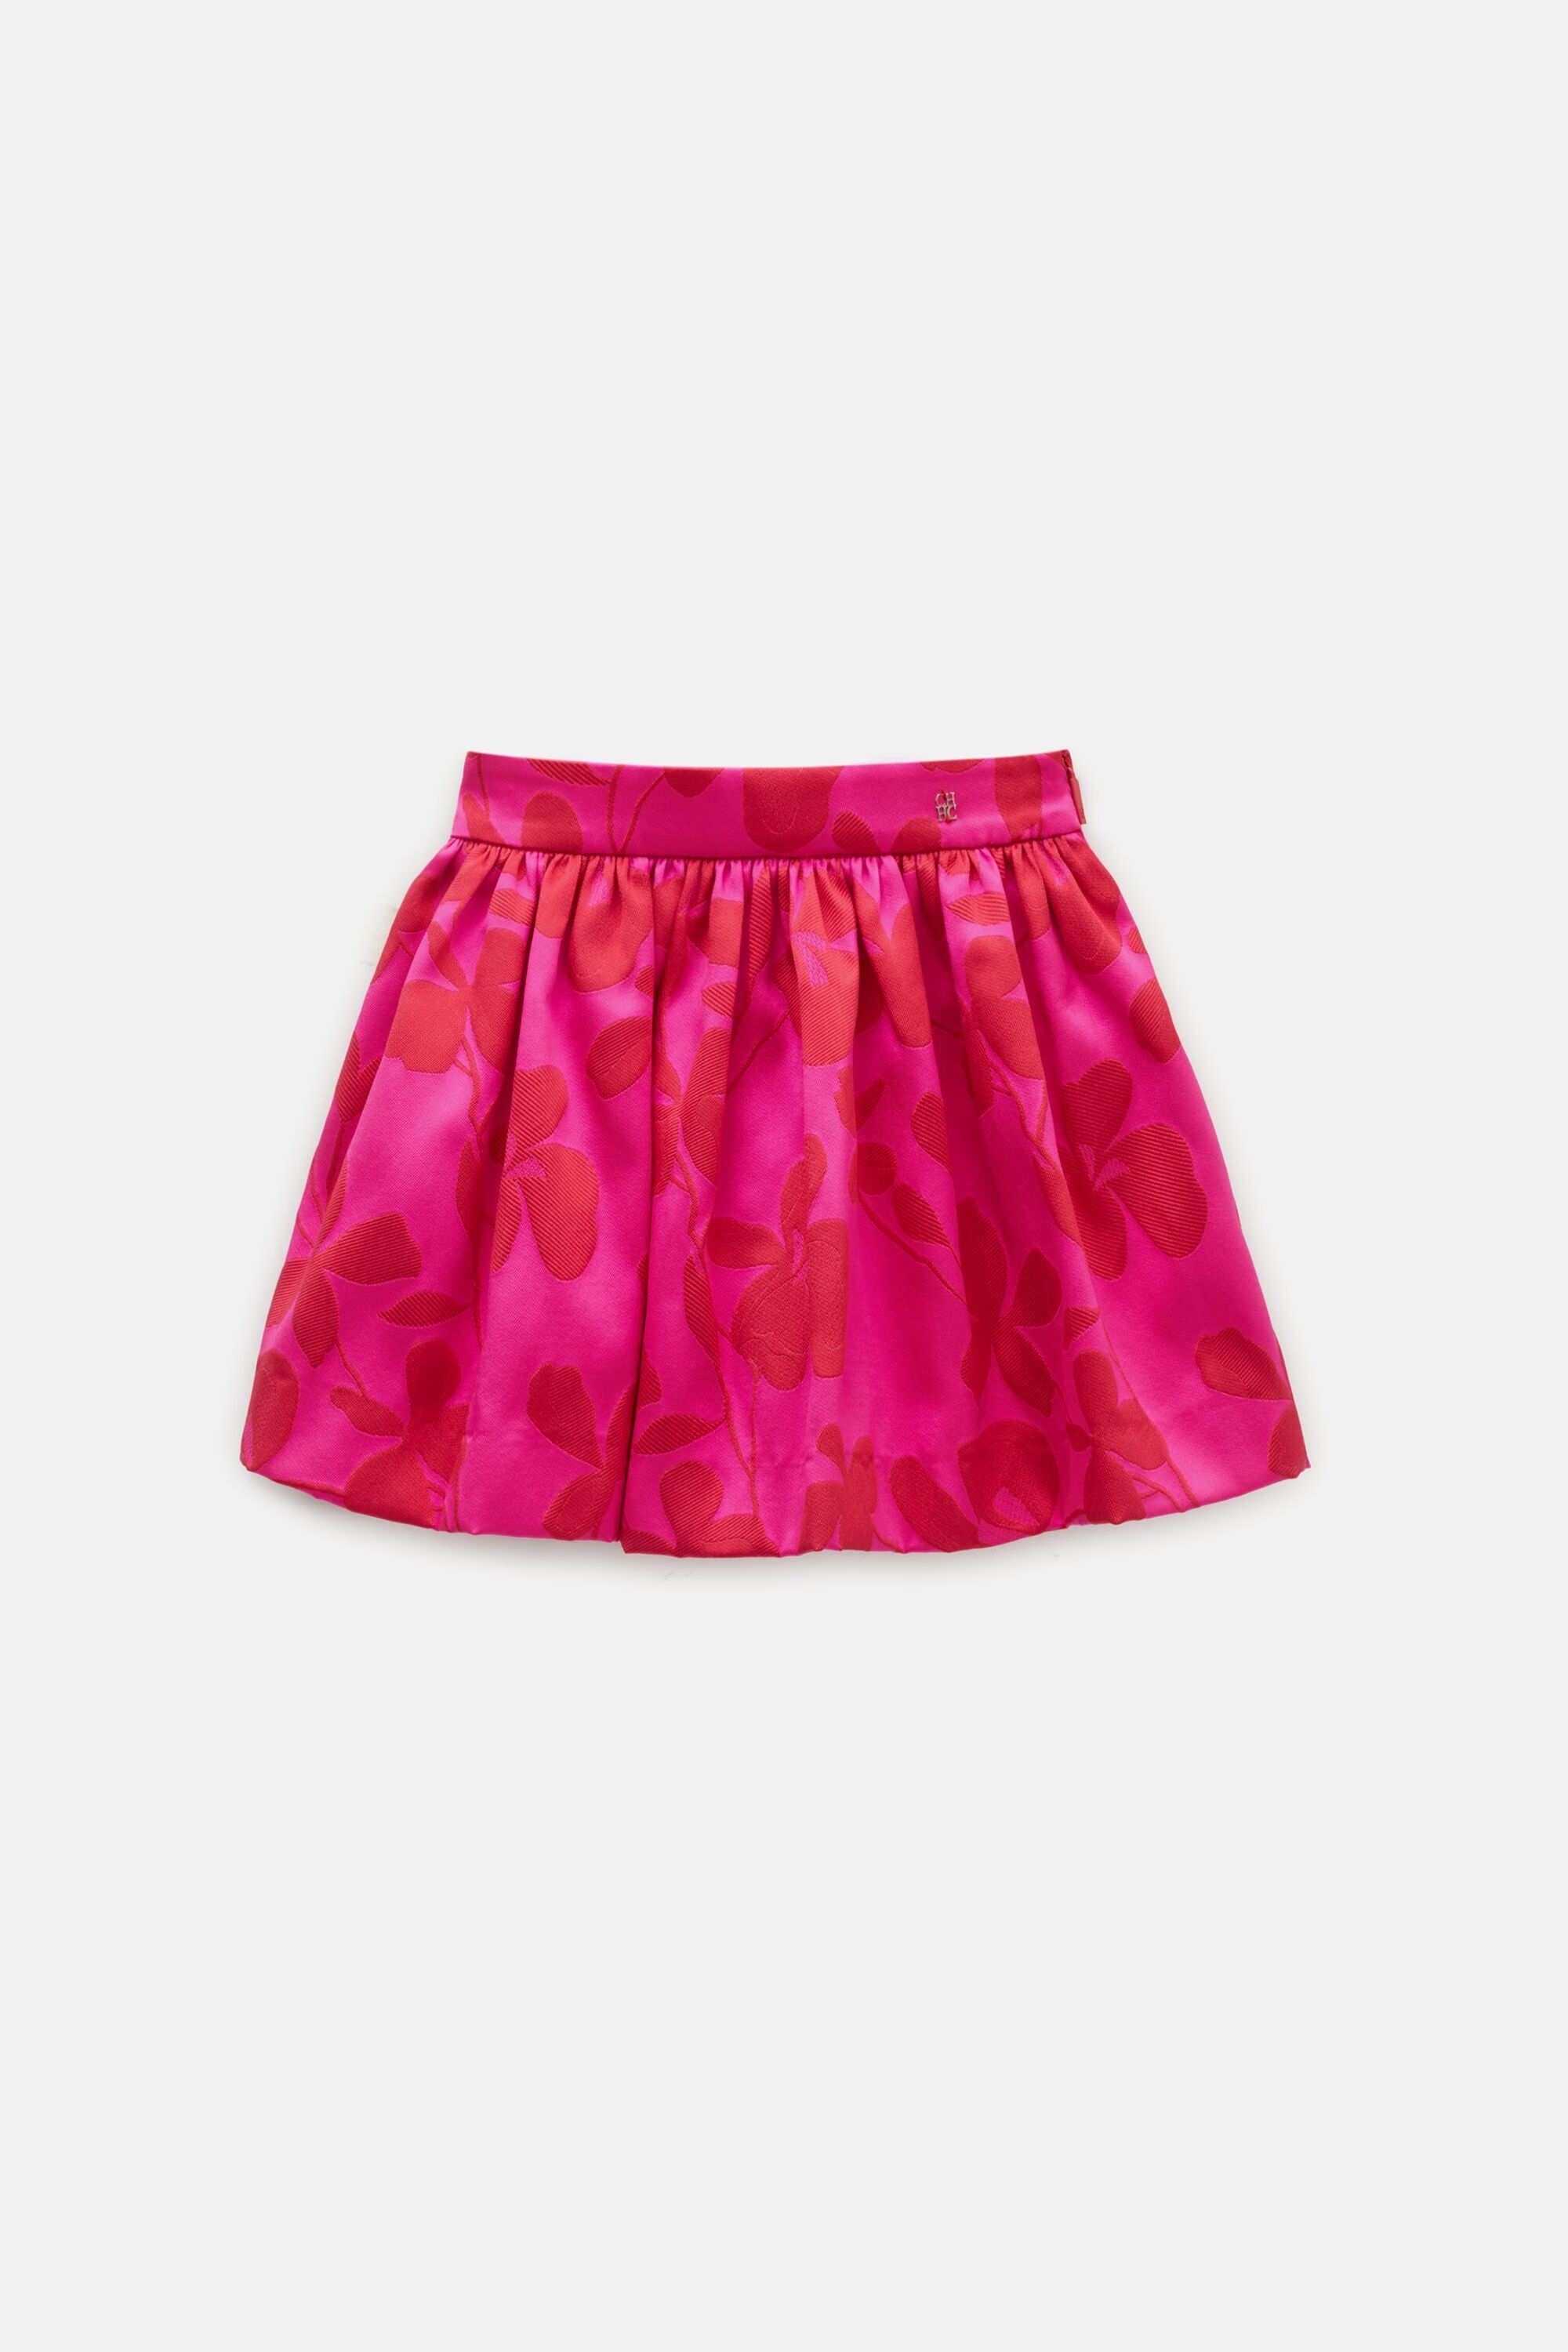 Brocade skirt